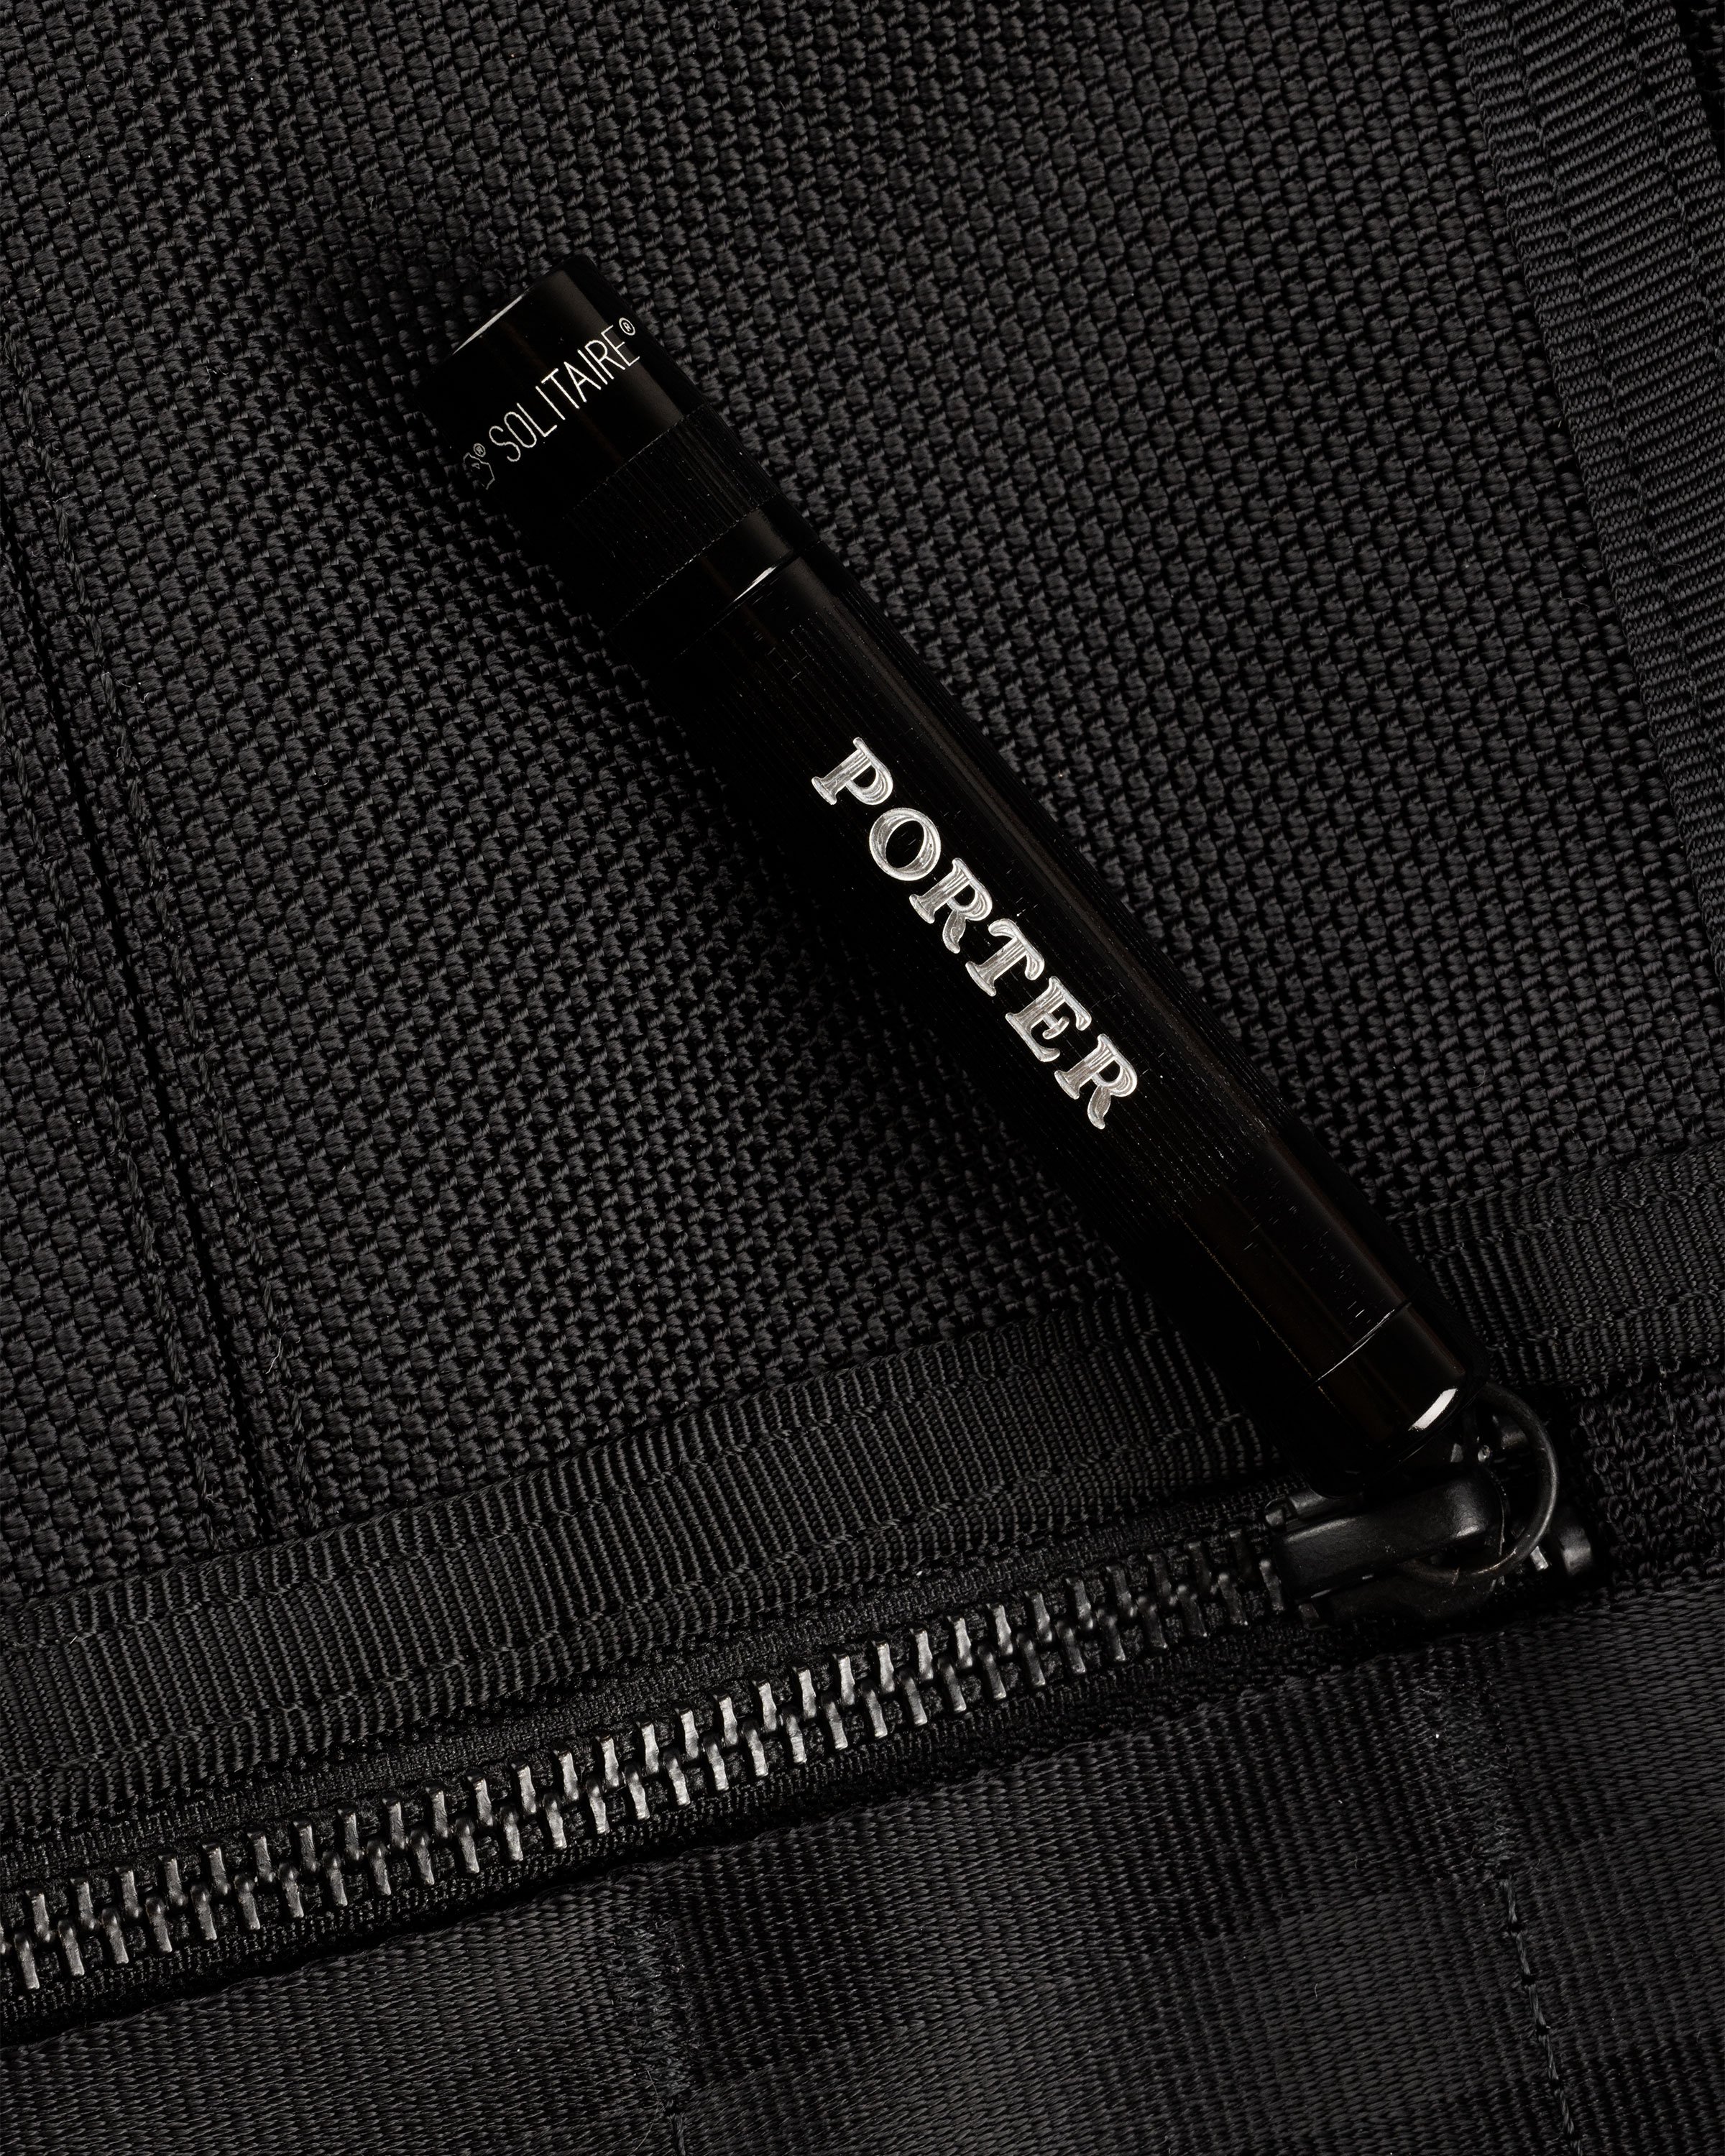 Porter-Yoshida & Co. - Heat Sling Shoulder Bag Black - Accessories - Black - Image 8